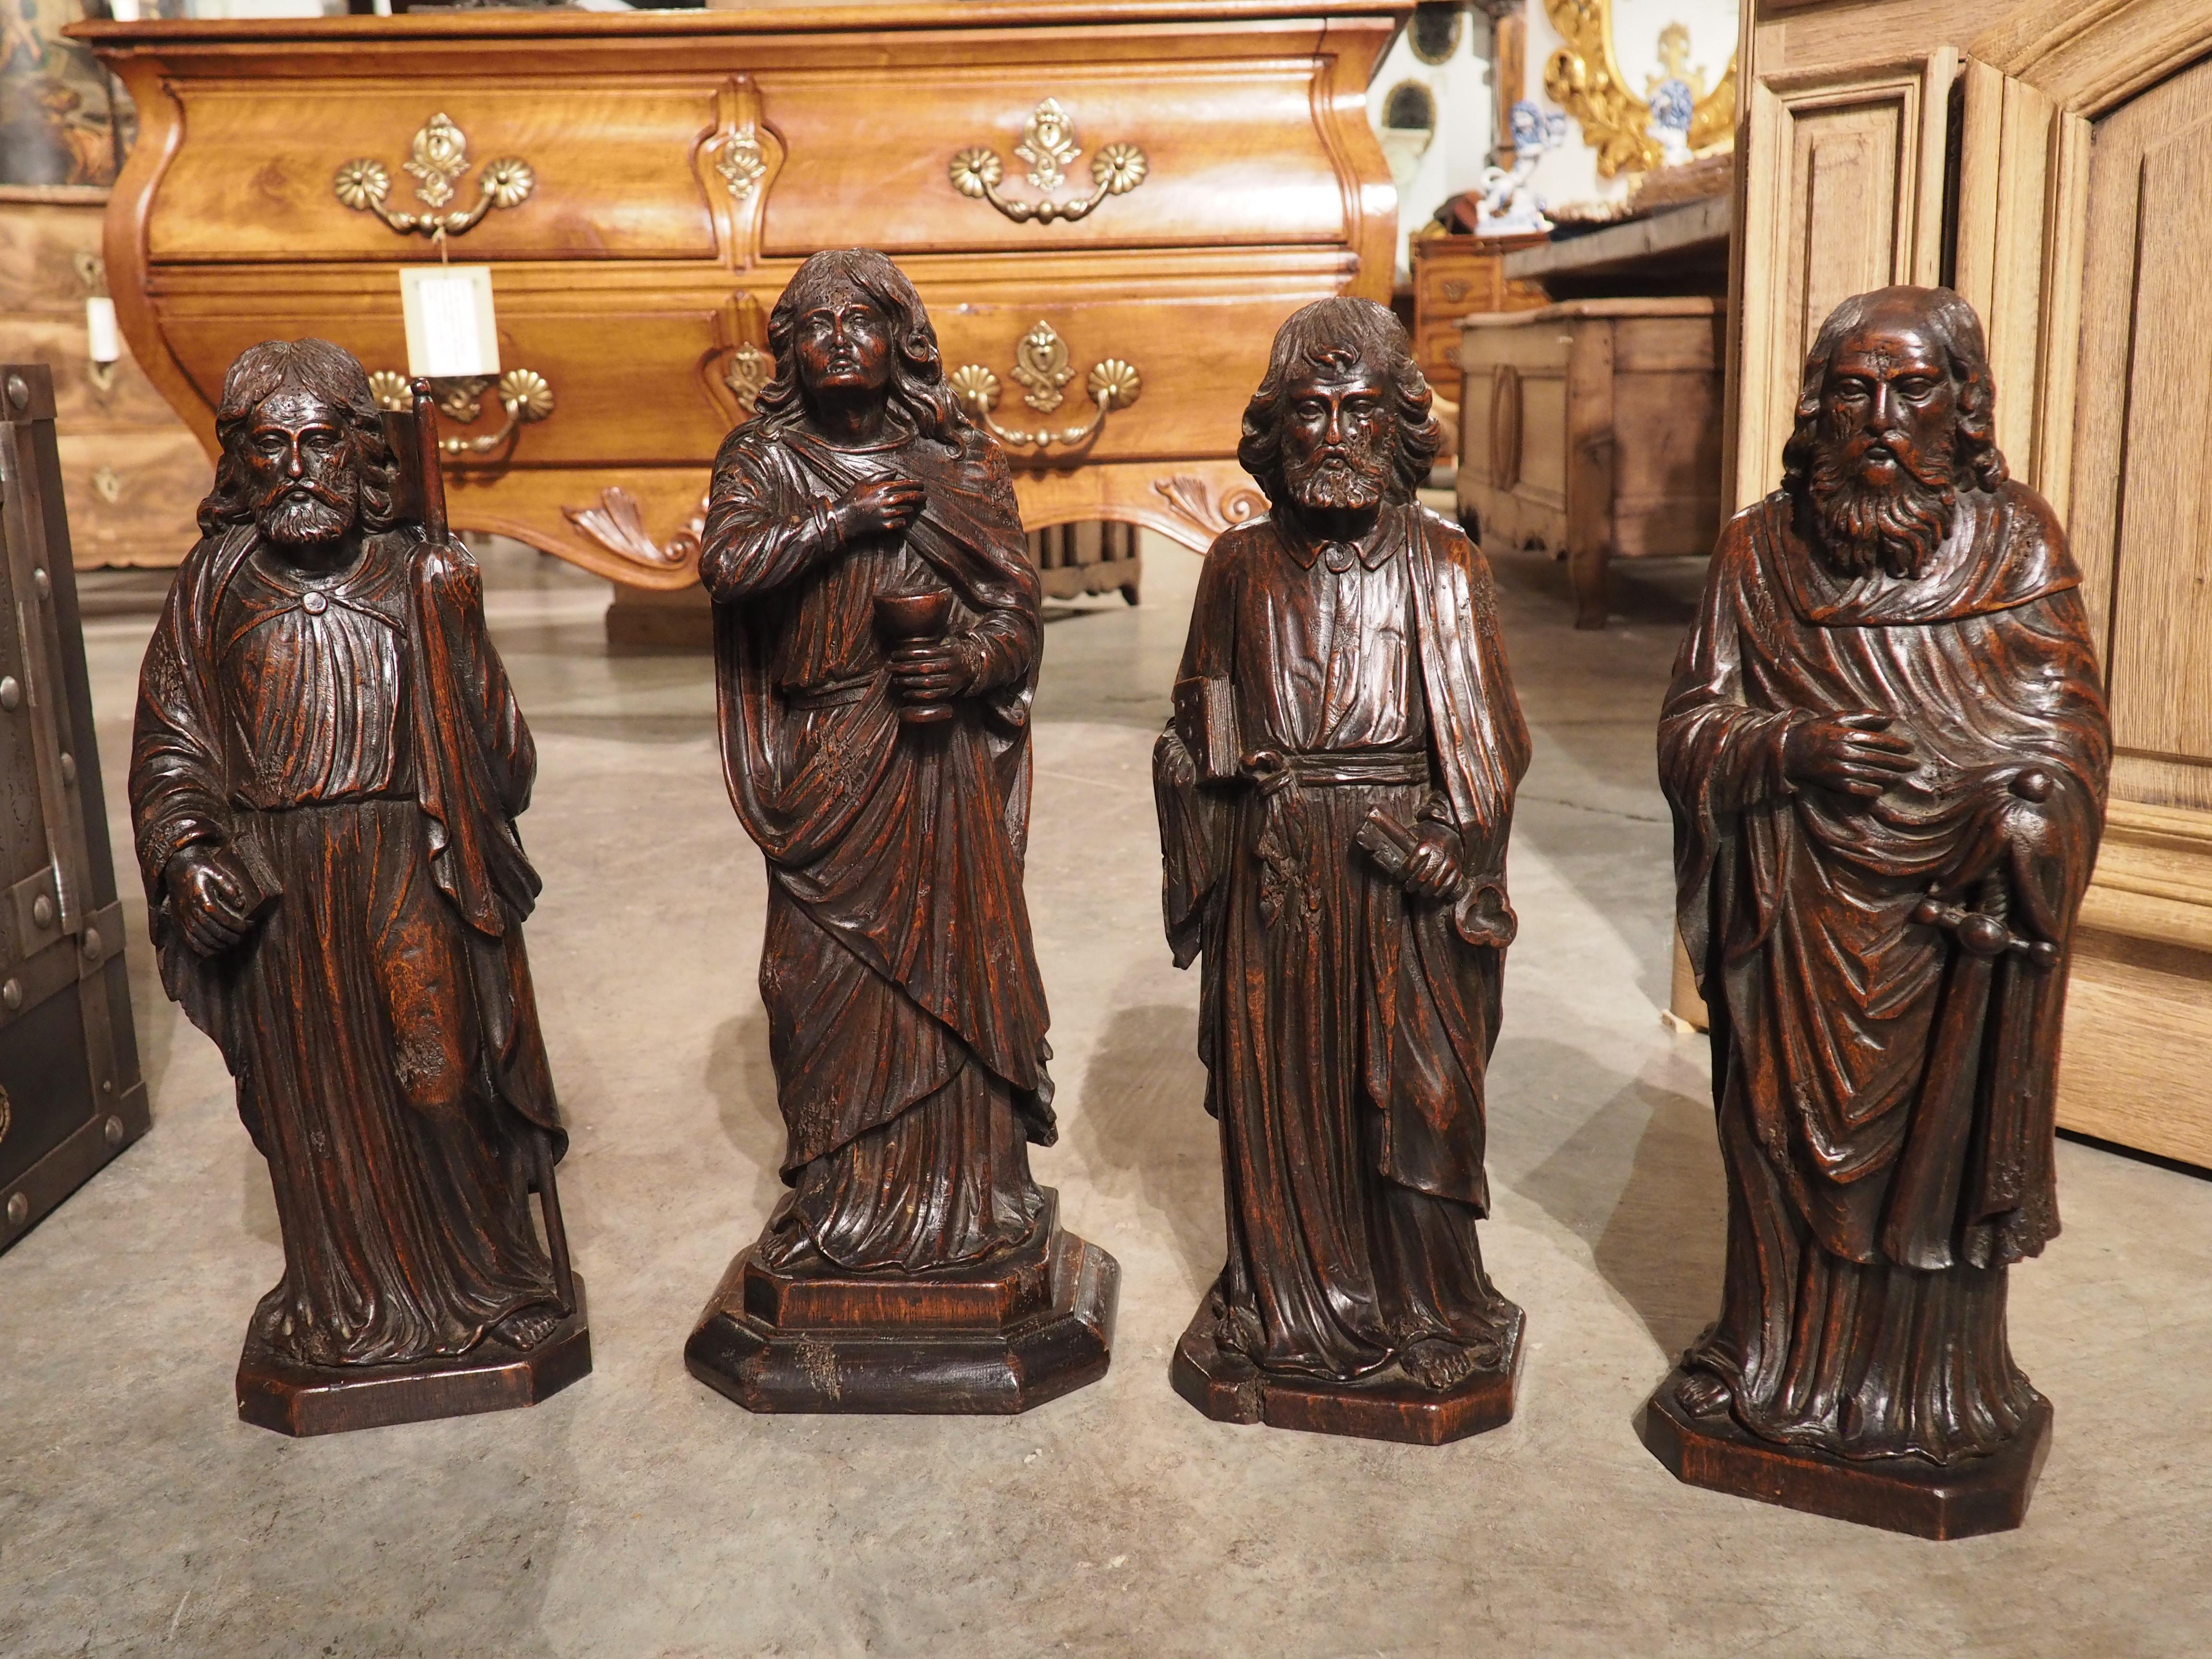 Diese handgeschnitzten Skulpturen aus Eichenholz (um 1800) stellen die wohl wichtigsten Apostel dar: Jakobus, Johannes, Petrus und Paulus. Alle Figuren unterscheiden sich deutlich voneinander, obwohl sie einige Gemeinsamkeiten aufweisen, wie z. B.,